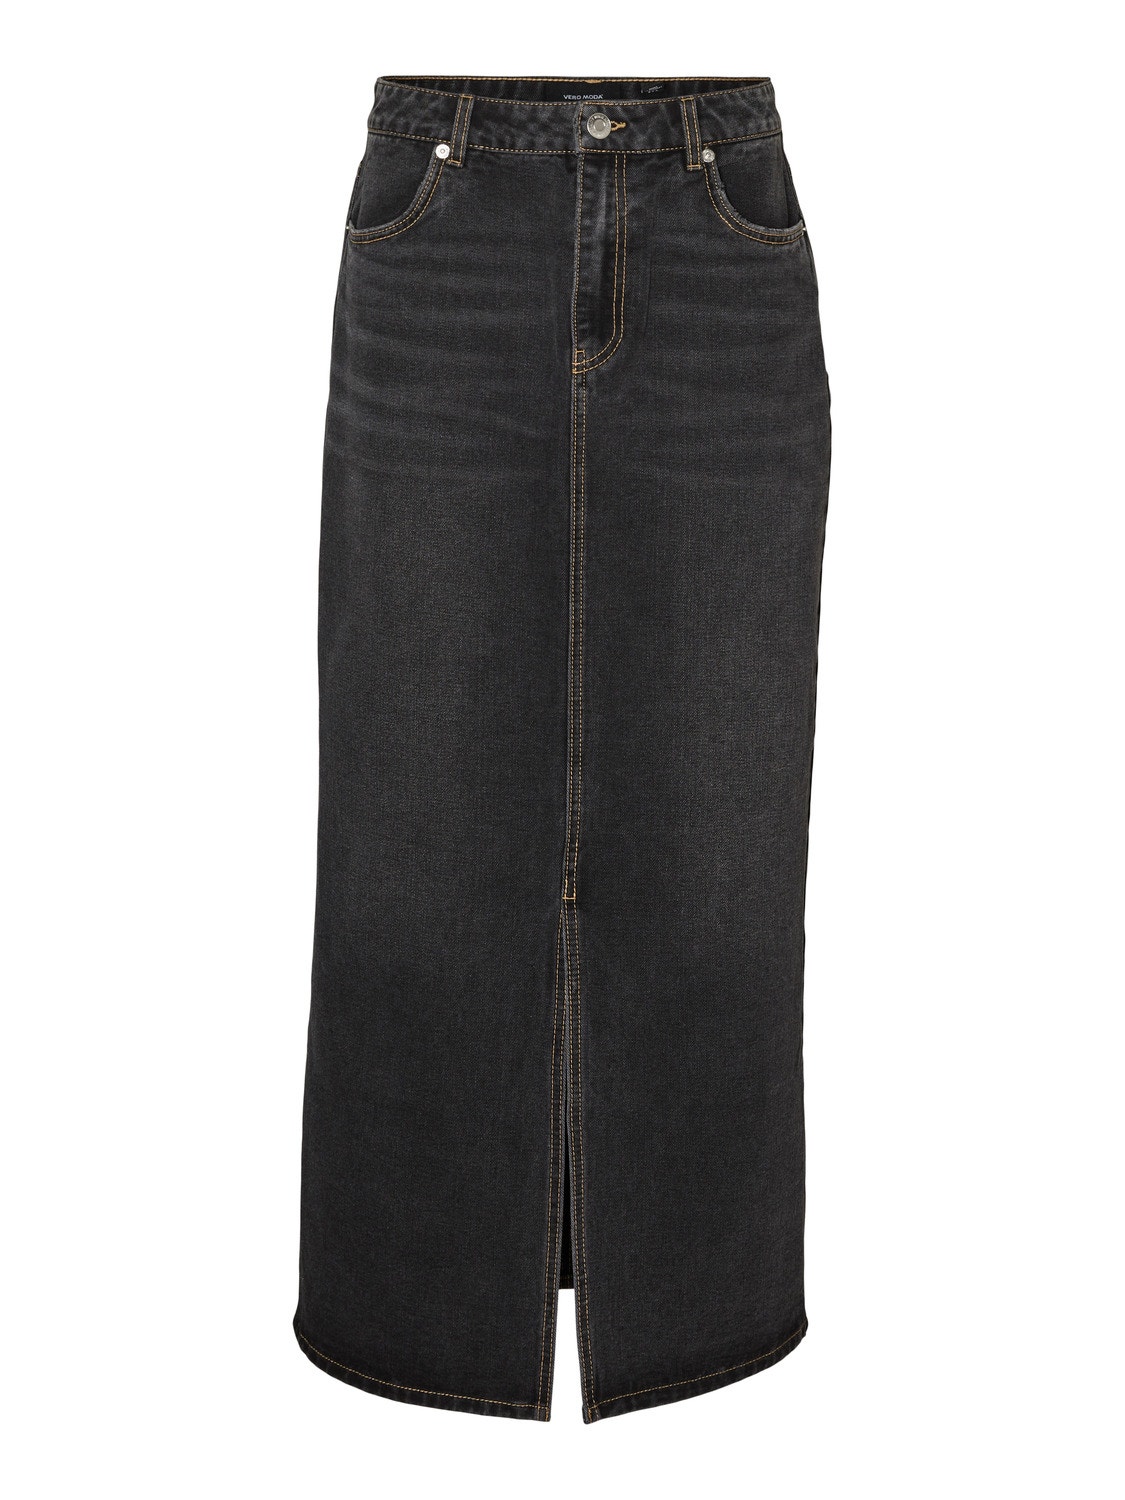 Vero Moda VMKYLE Long Skirt -Dark Grey Denim - 10308404